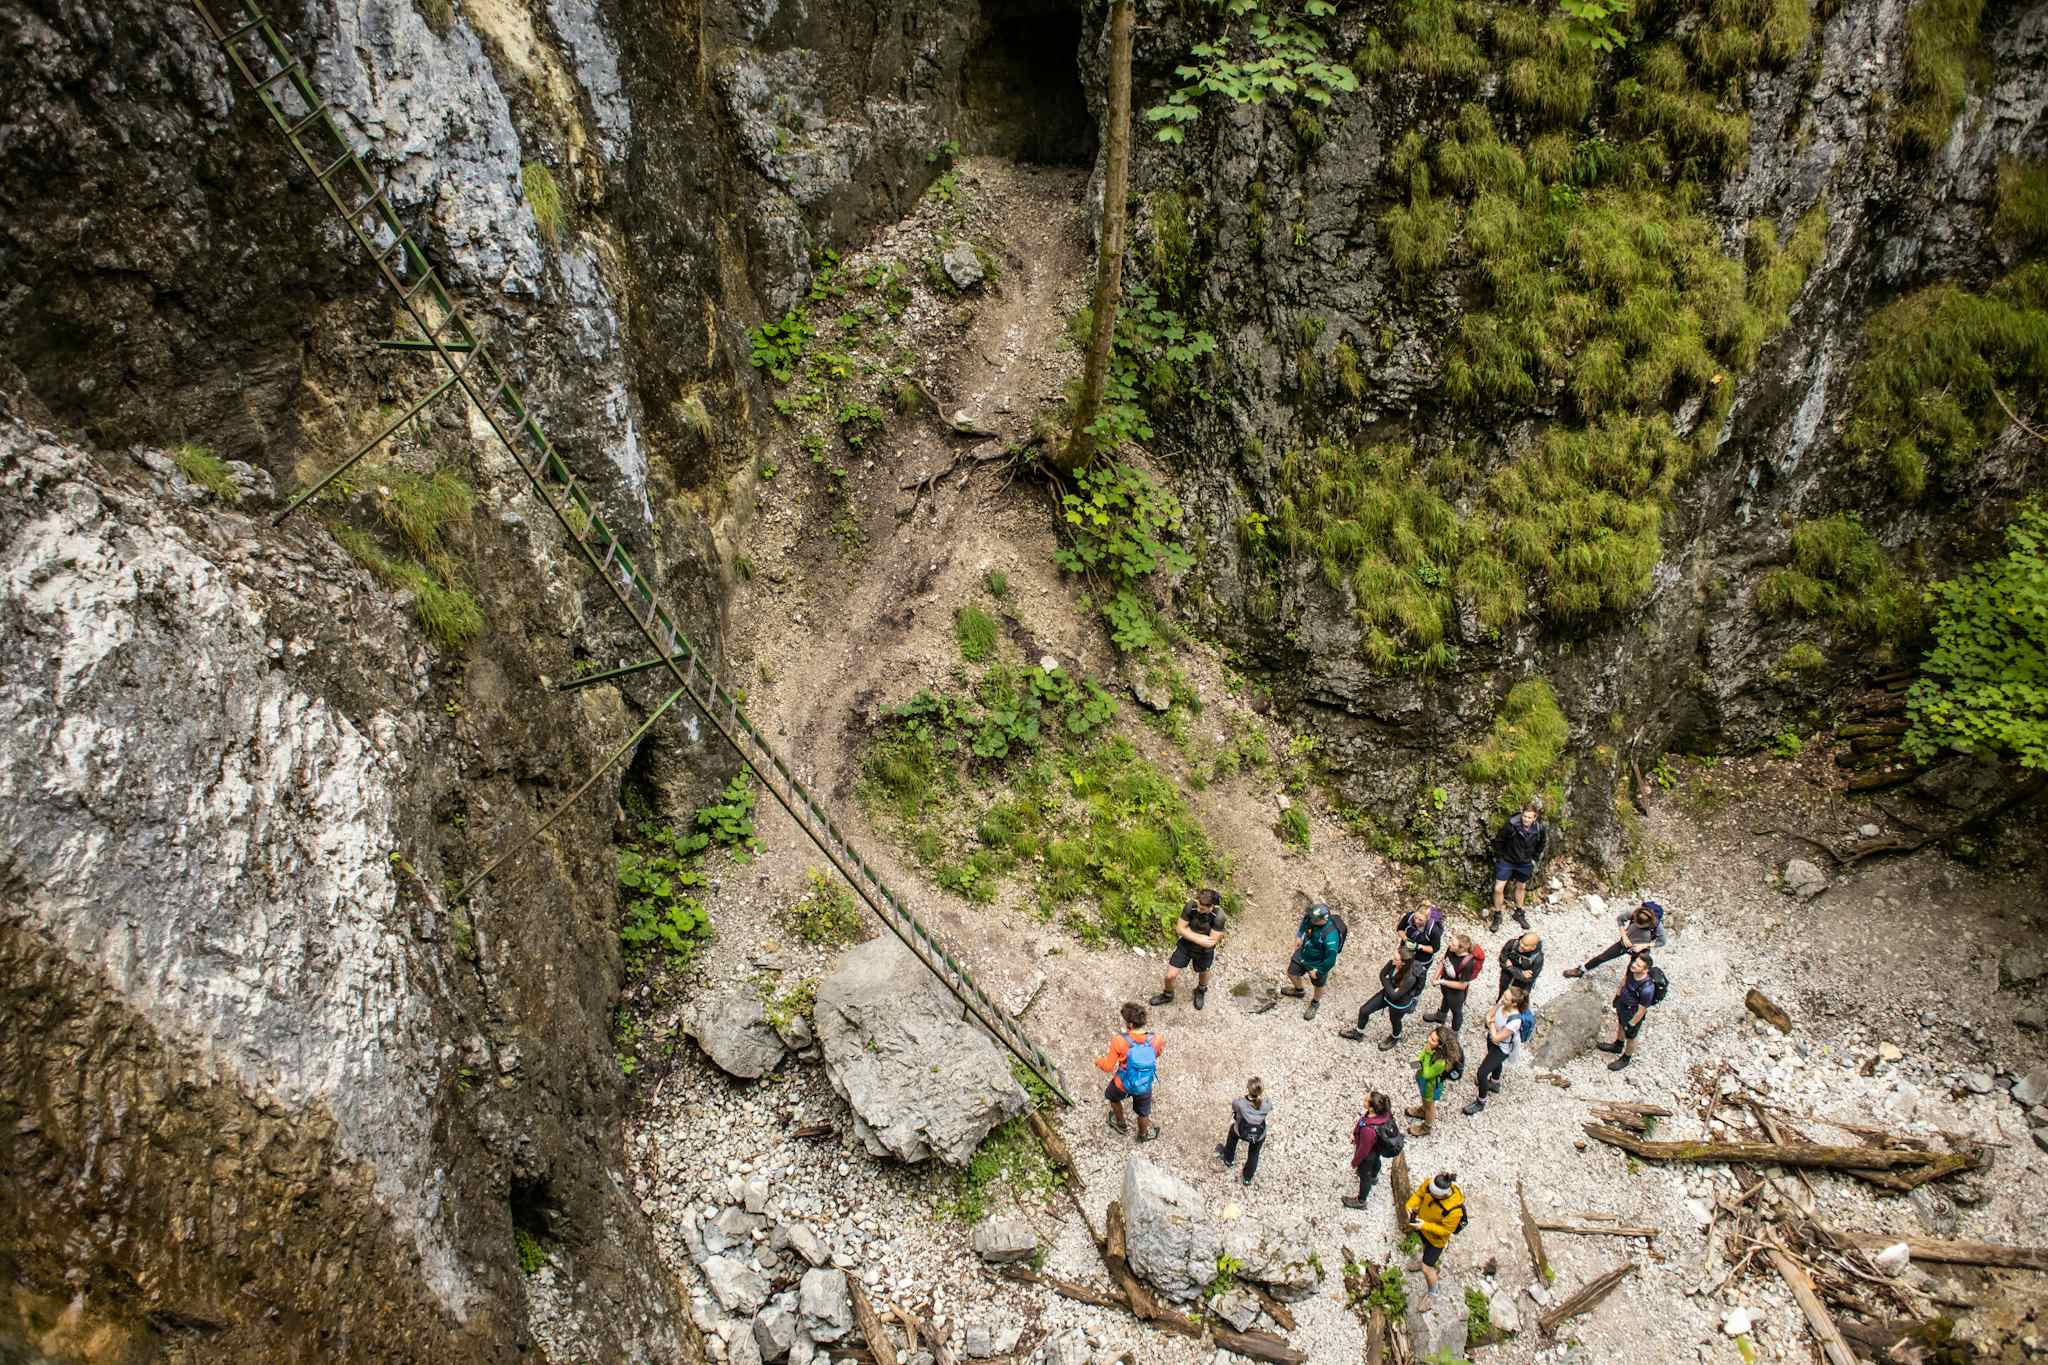 Slovak Paradise Sucha Bela Gorge, Slovakia
Host image - Slovakation